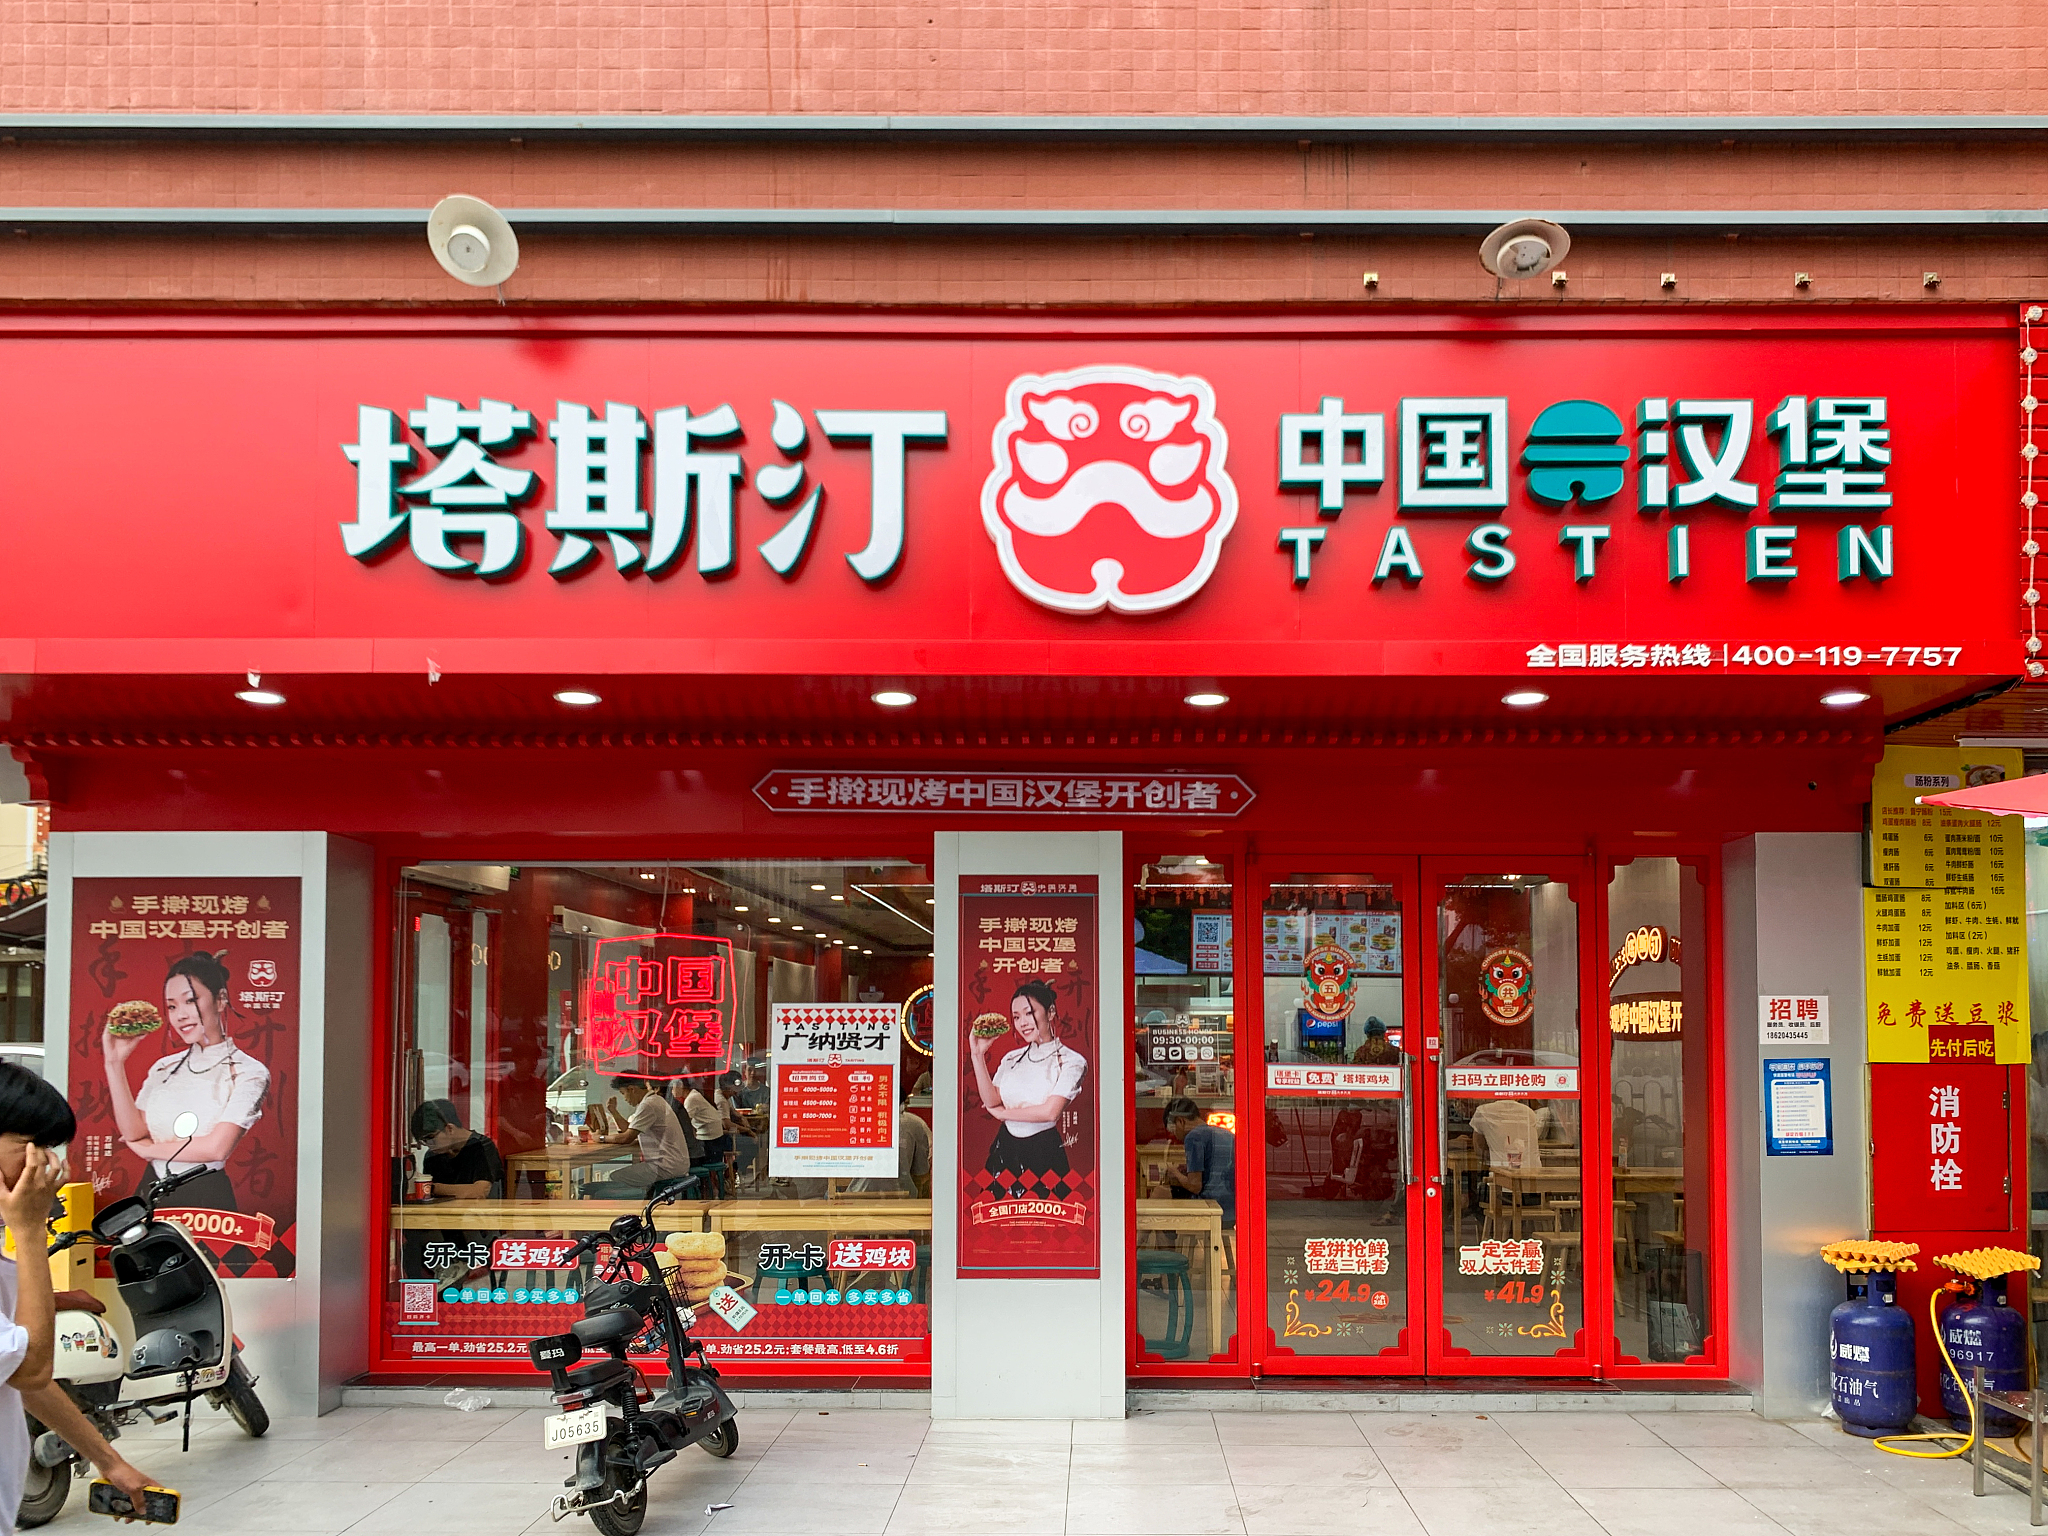 61 「塔斯汀」将完成新一轮融资塔斯汀门店,图据视觉中国36氪获悉